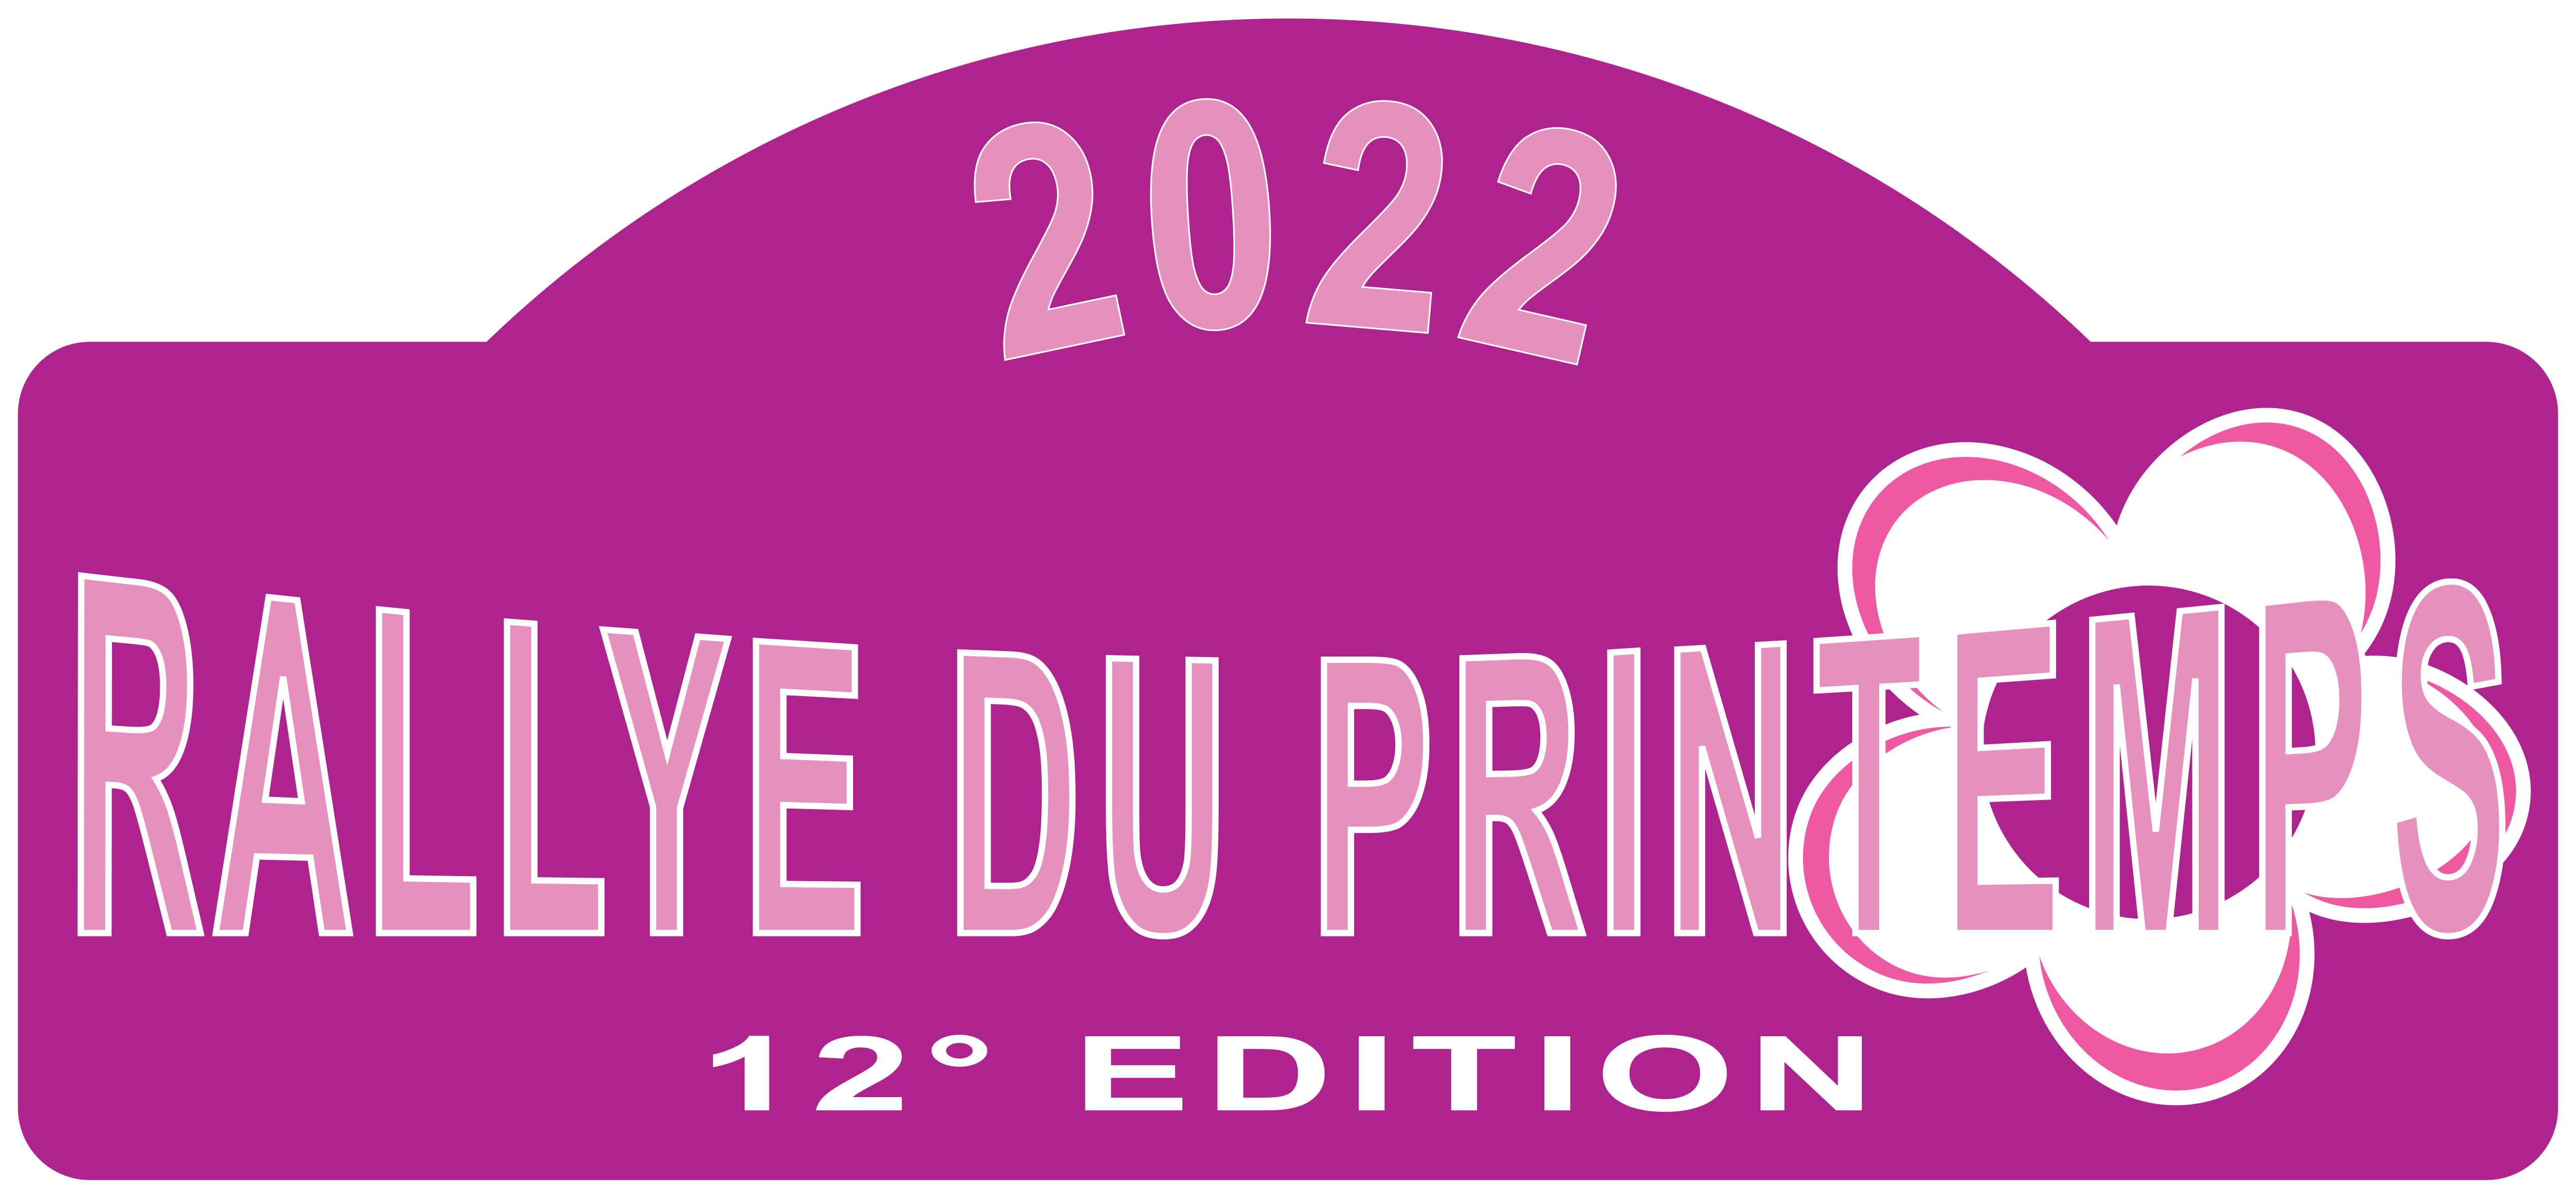 Rallye du printemps_le 26 mars 2022 Logo